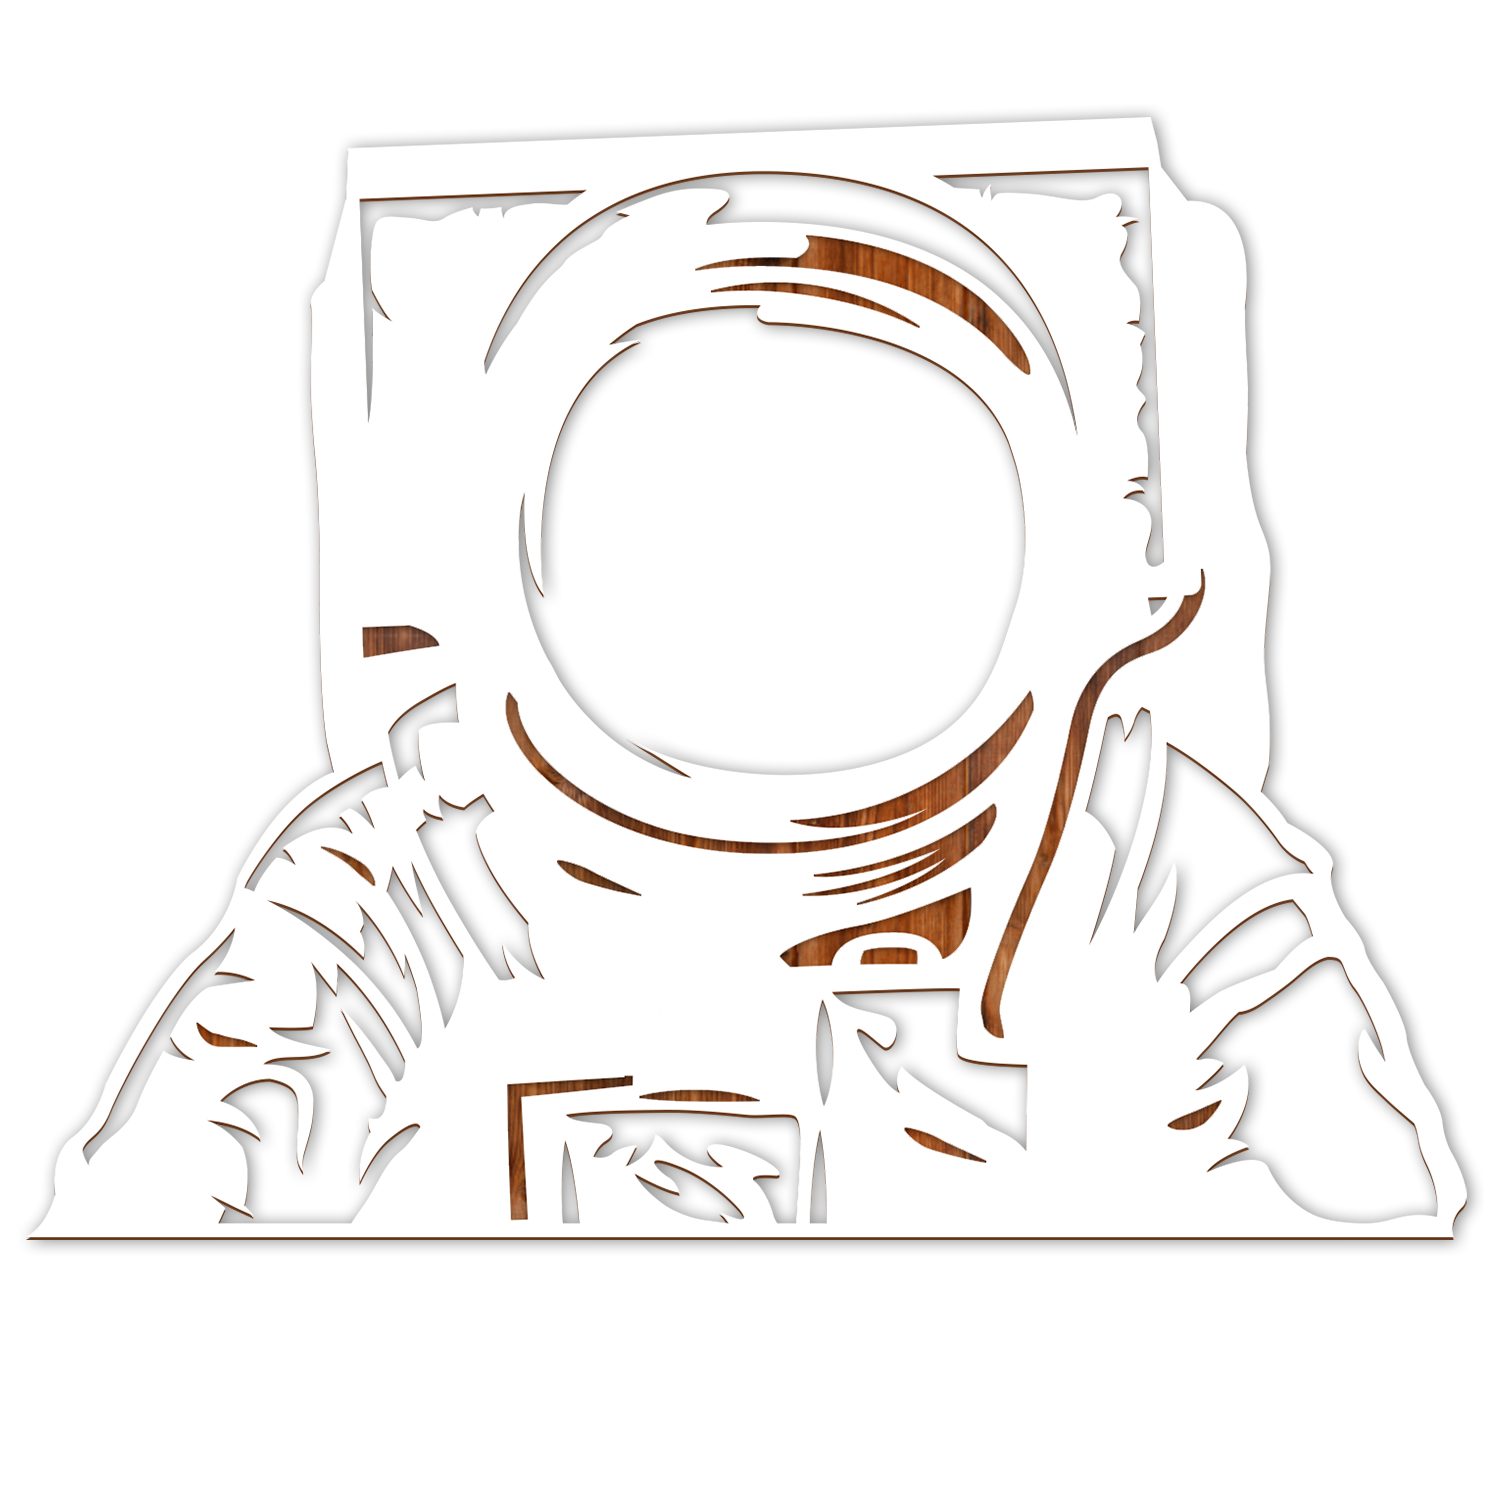 Namofactur Dekospiegel Holz Motiv Spiegel für Astronauten & Raumfahrer, Lampe für Kinder, Wandspiegel mit Holzrahmen 'Astronaut' inkl. LED Beleuchtung Licht